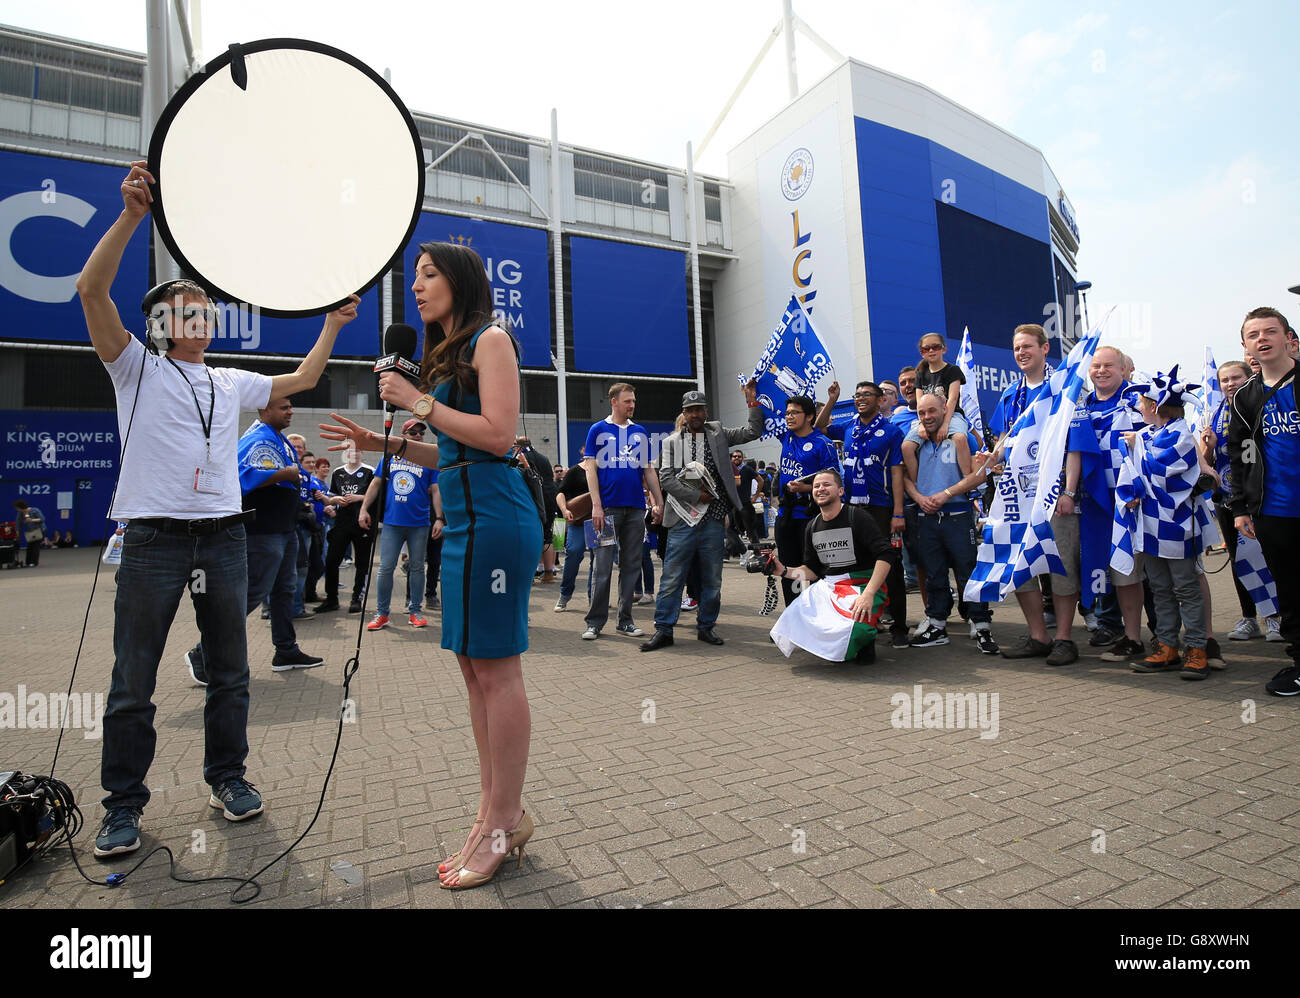 Les fans de Leicester City devant le King Power Stadium avant coup d'envoi Banque D'Images